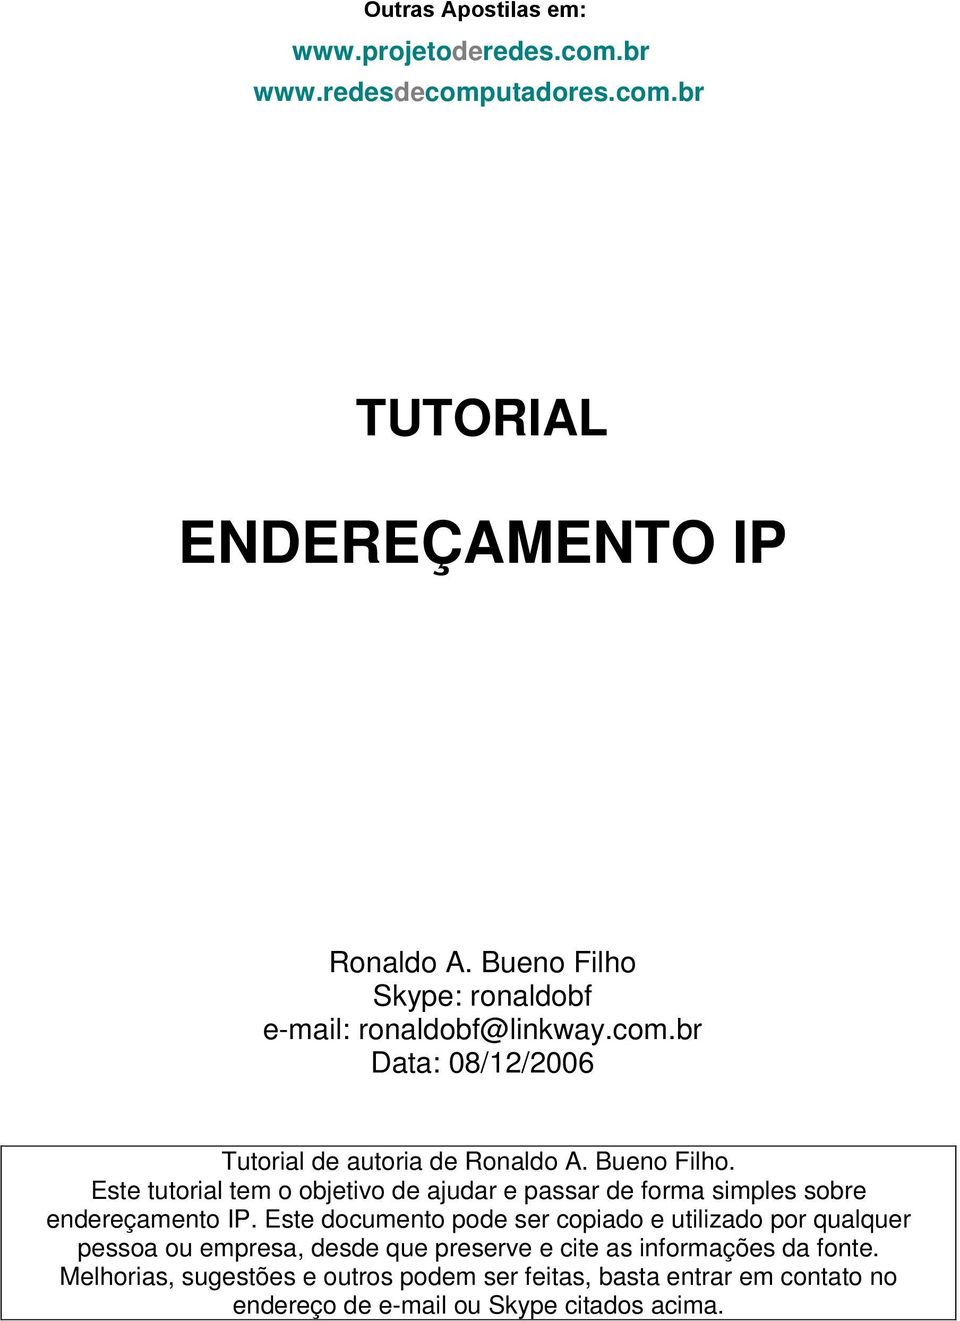 Este tutorial tem o objetivo de ajudar e passar de forma simples sobre endereçamento IP.